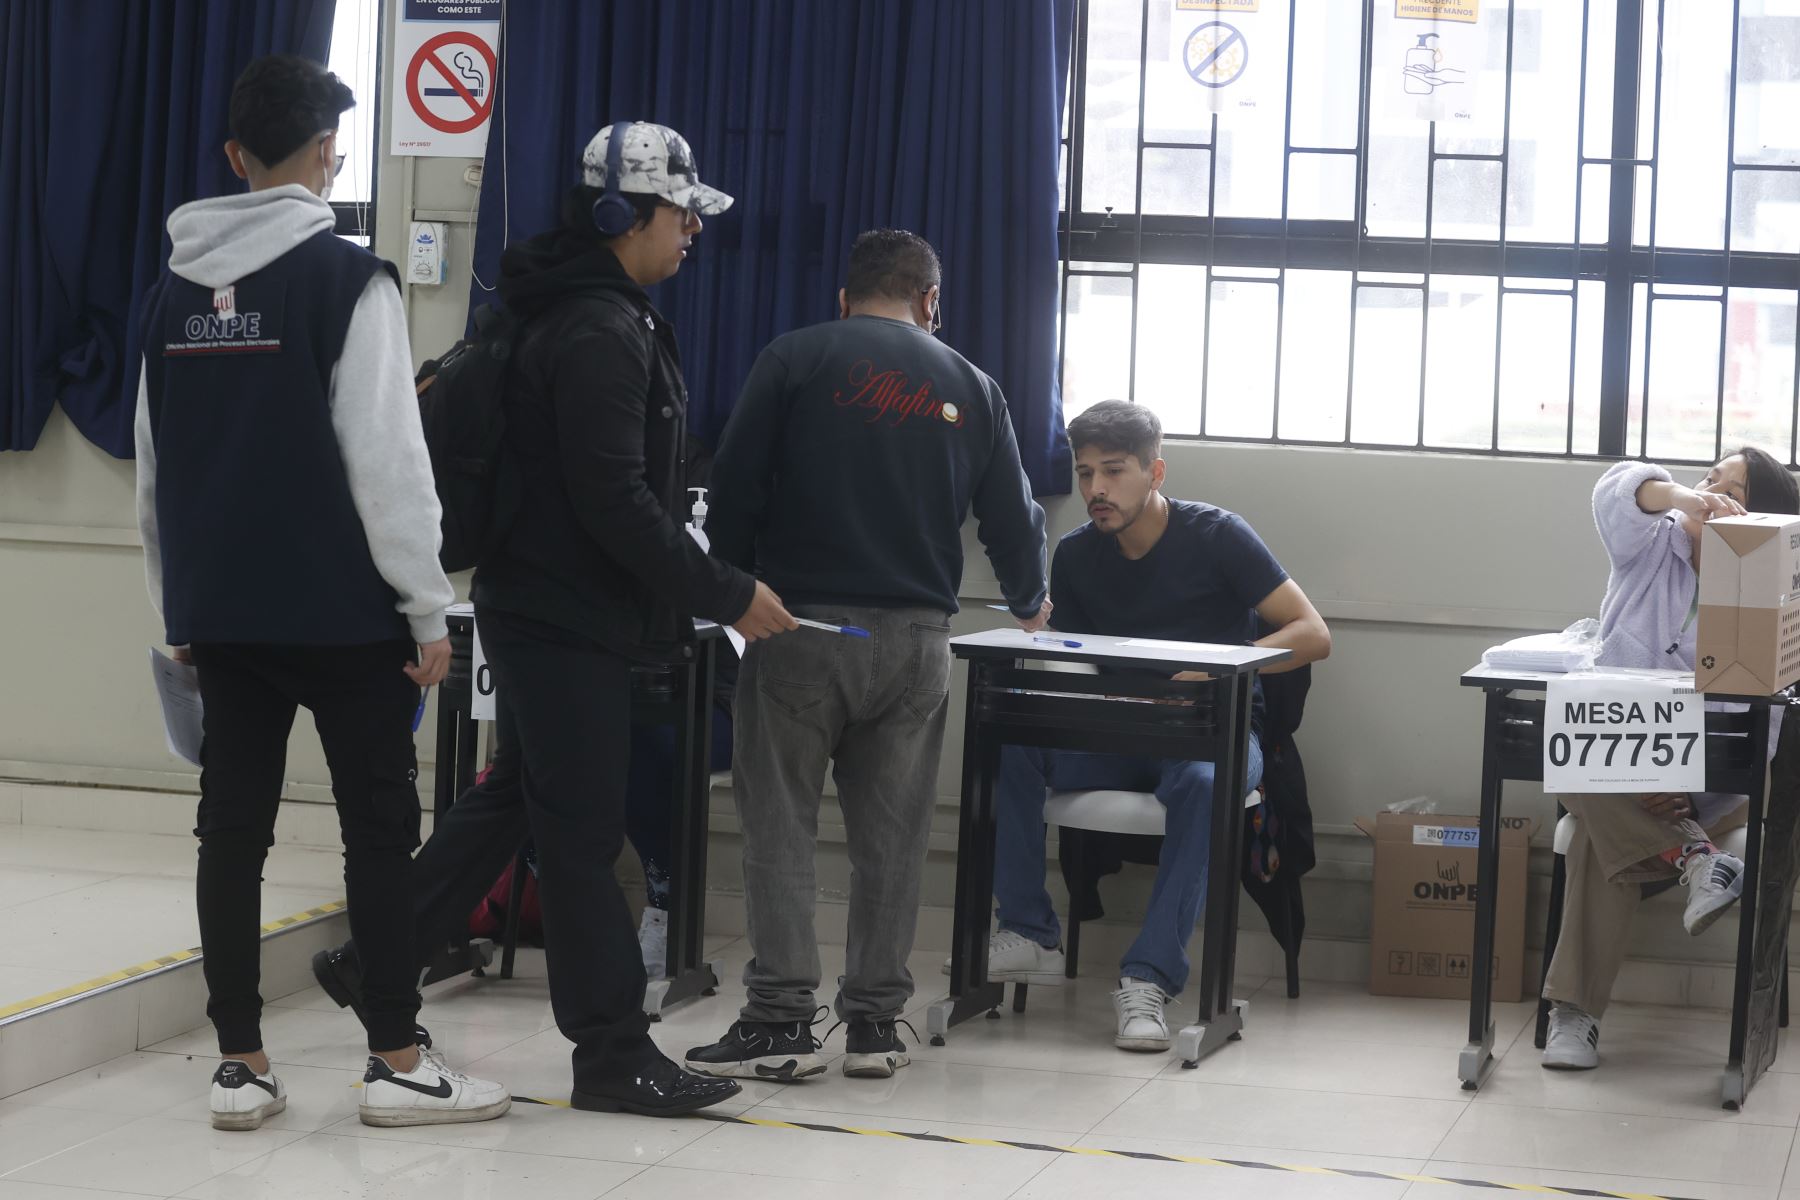 Segunda vuelta electoral en el Callao se desarrolla con normalidad.

Foto: ANDINA/Vidal Tarqui